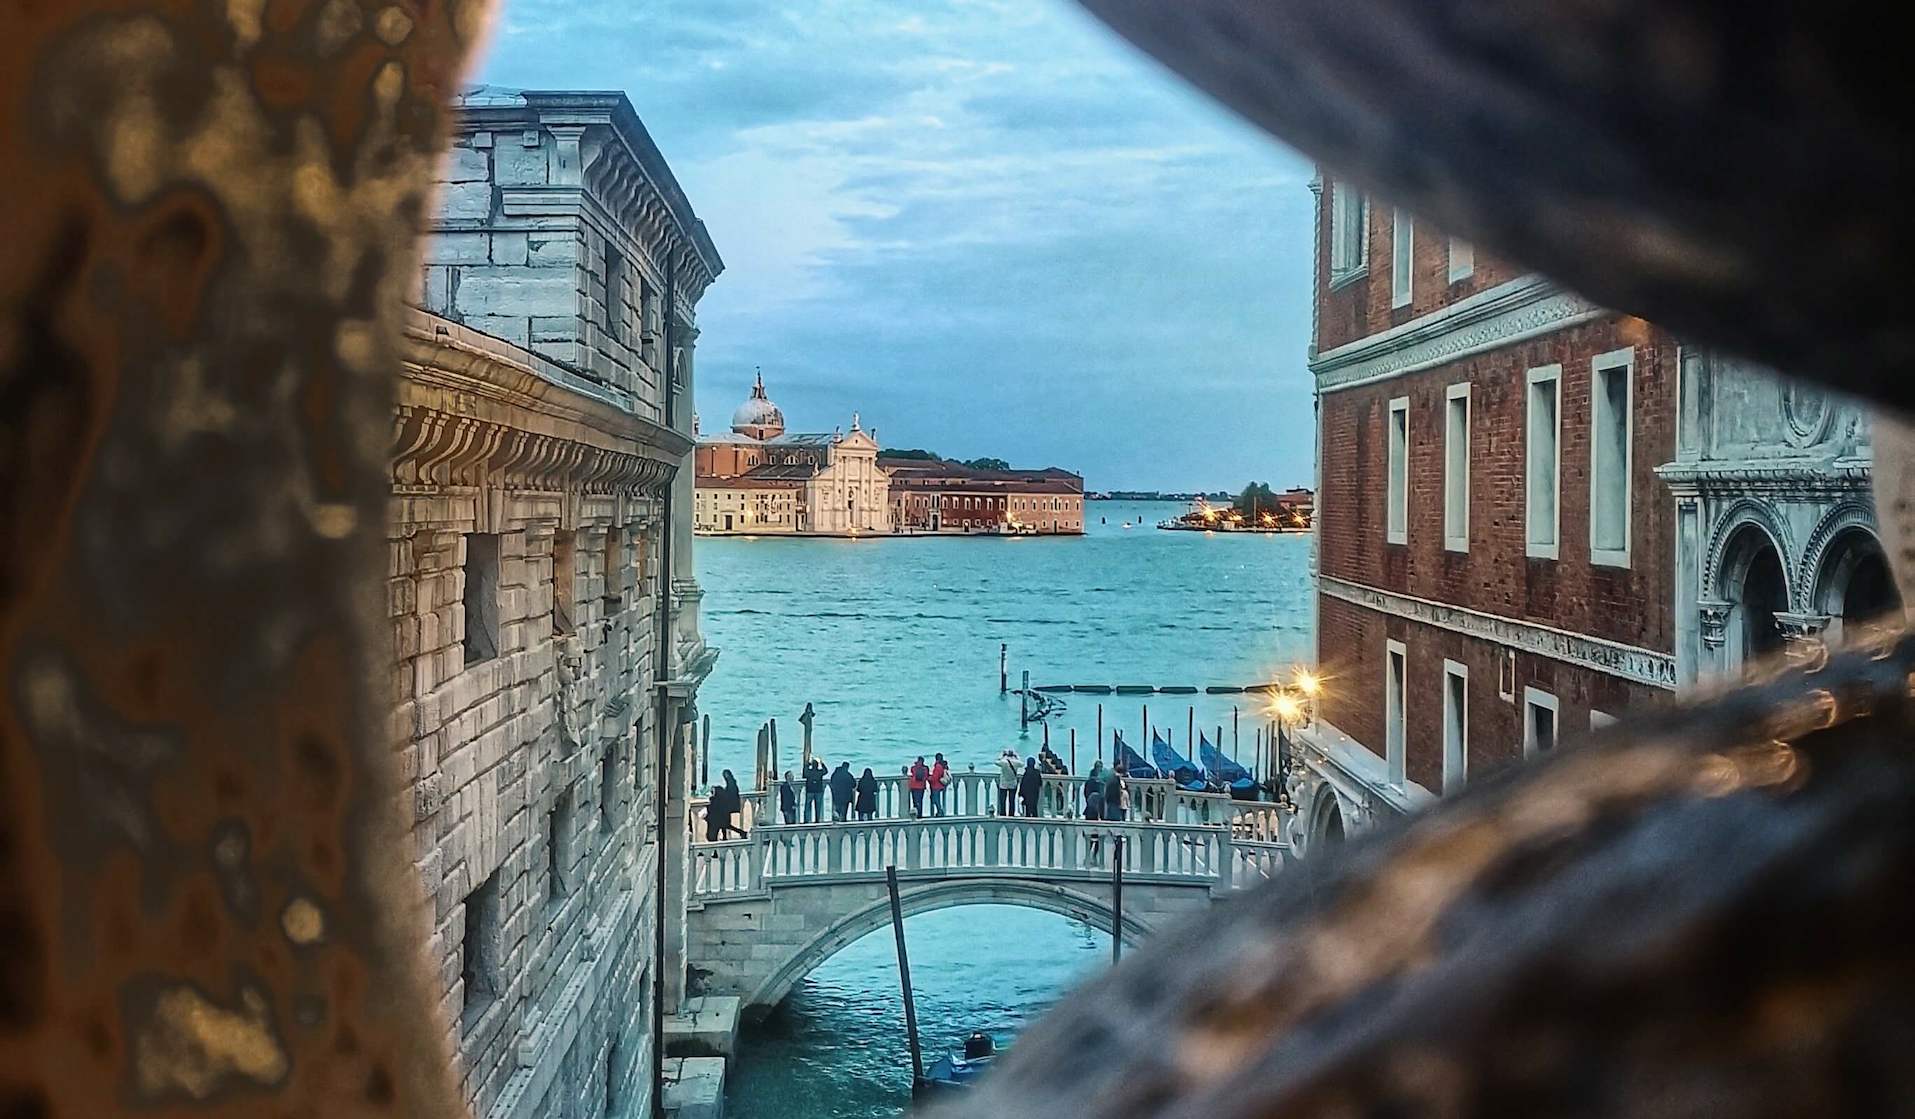 The Bridge of Sighs: All About Venice's Most Famous Bridge